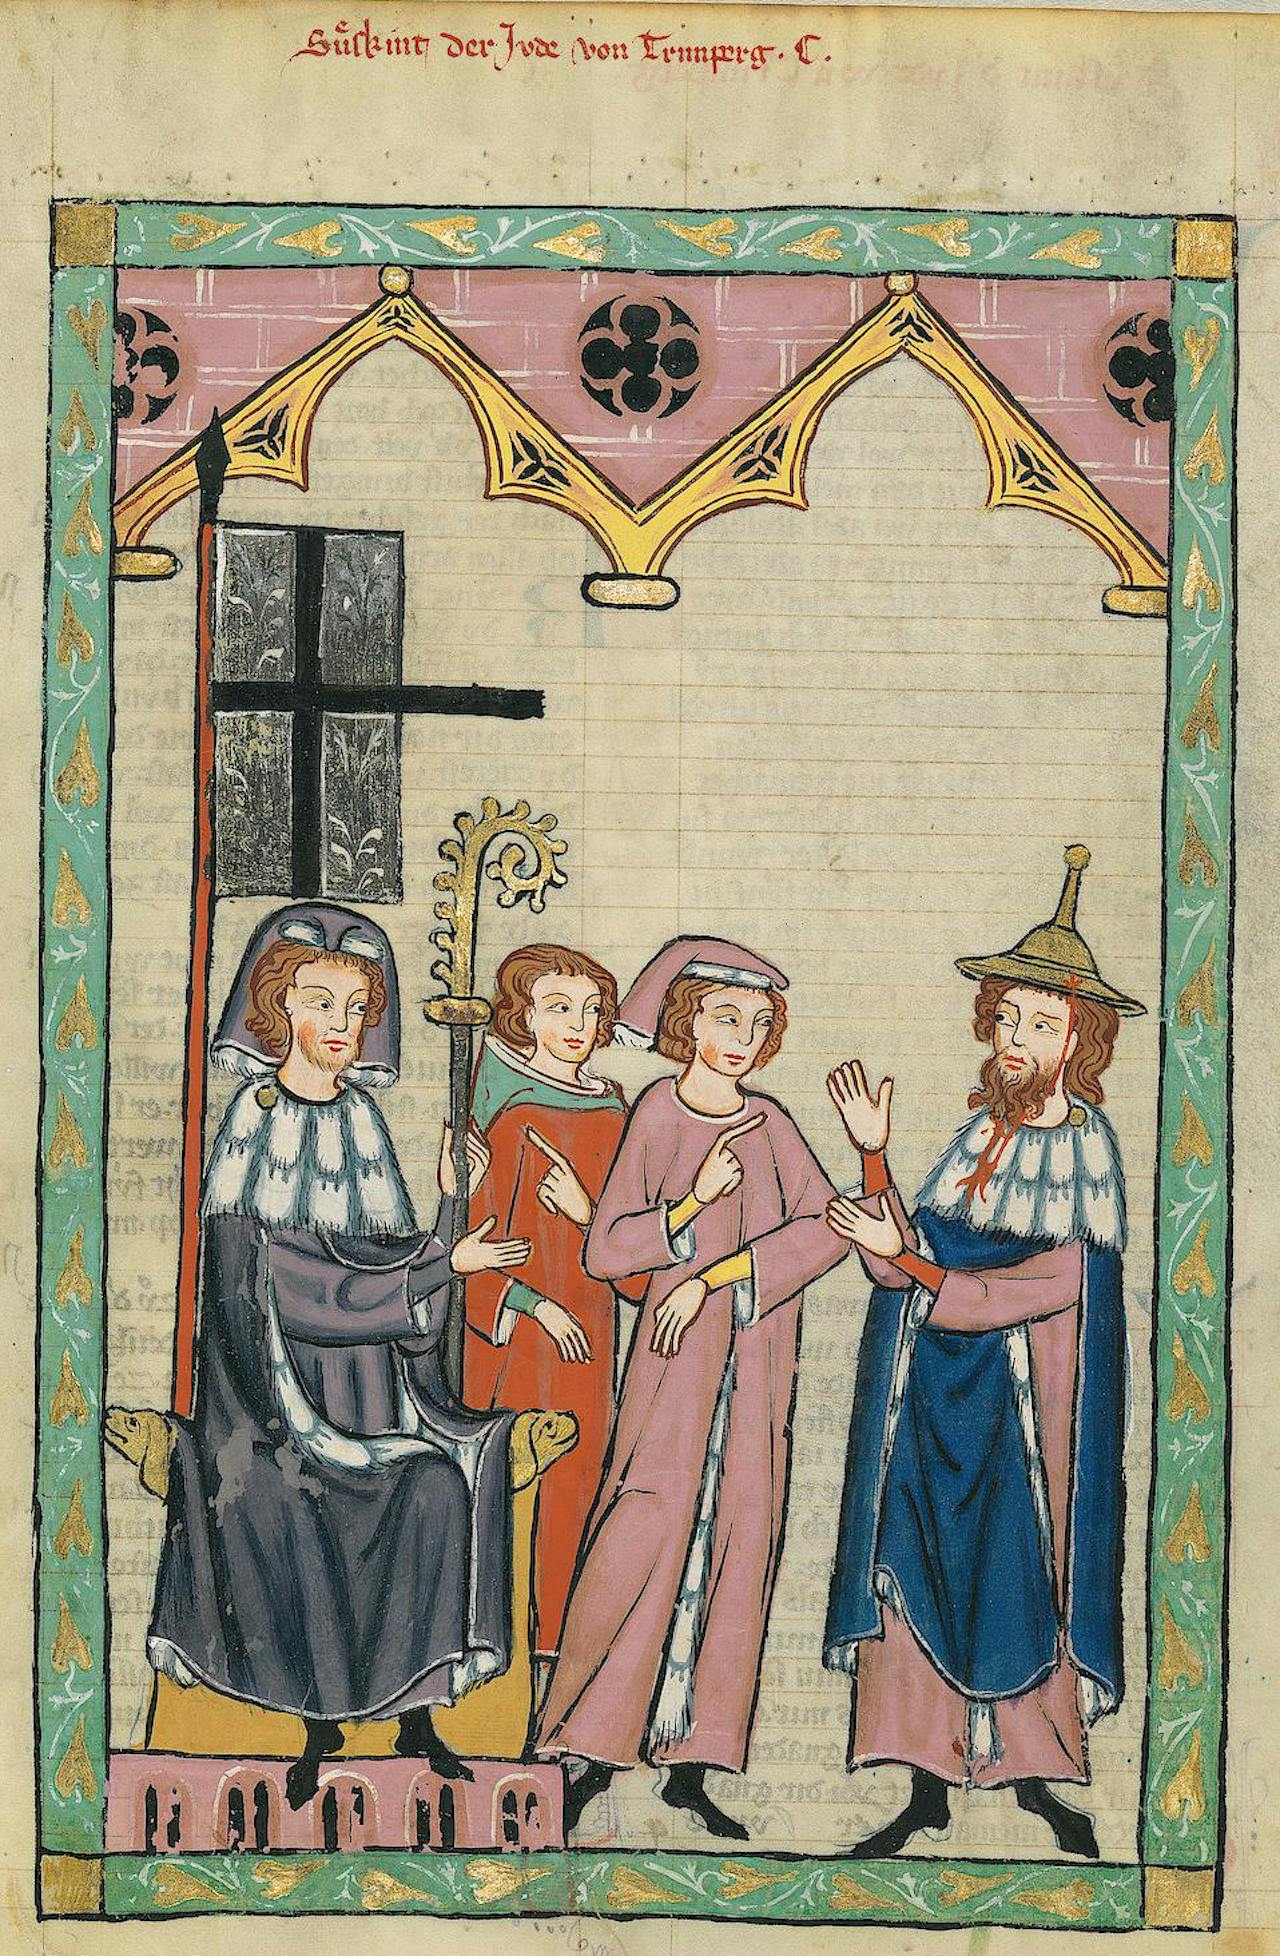 Een illustratie van een groep Antisemitismen in middeleeuwse kleding.